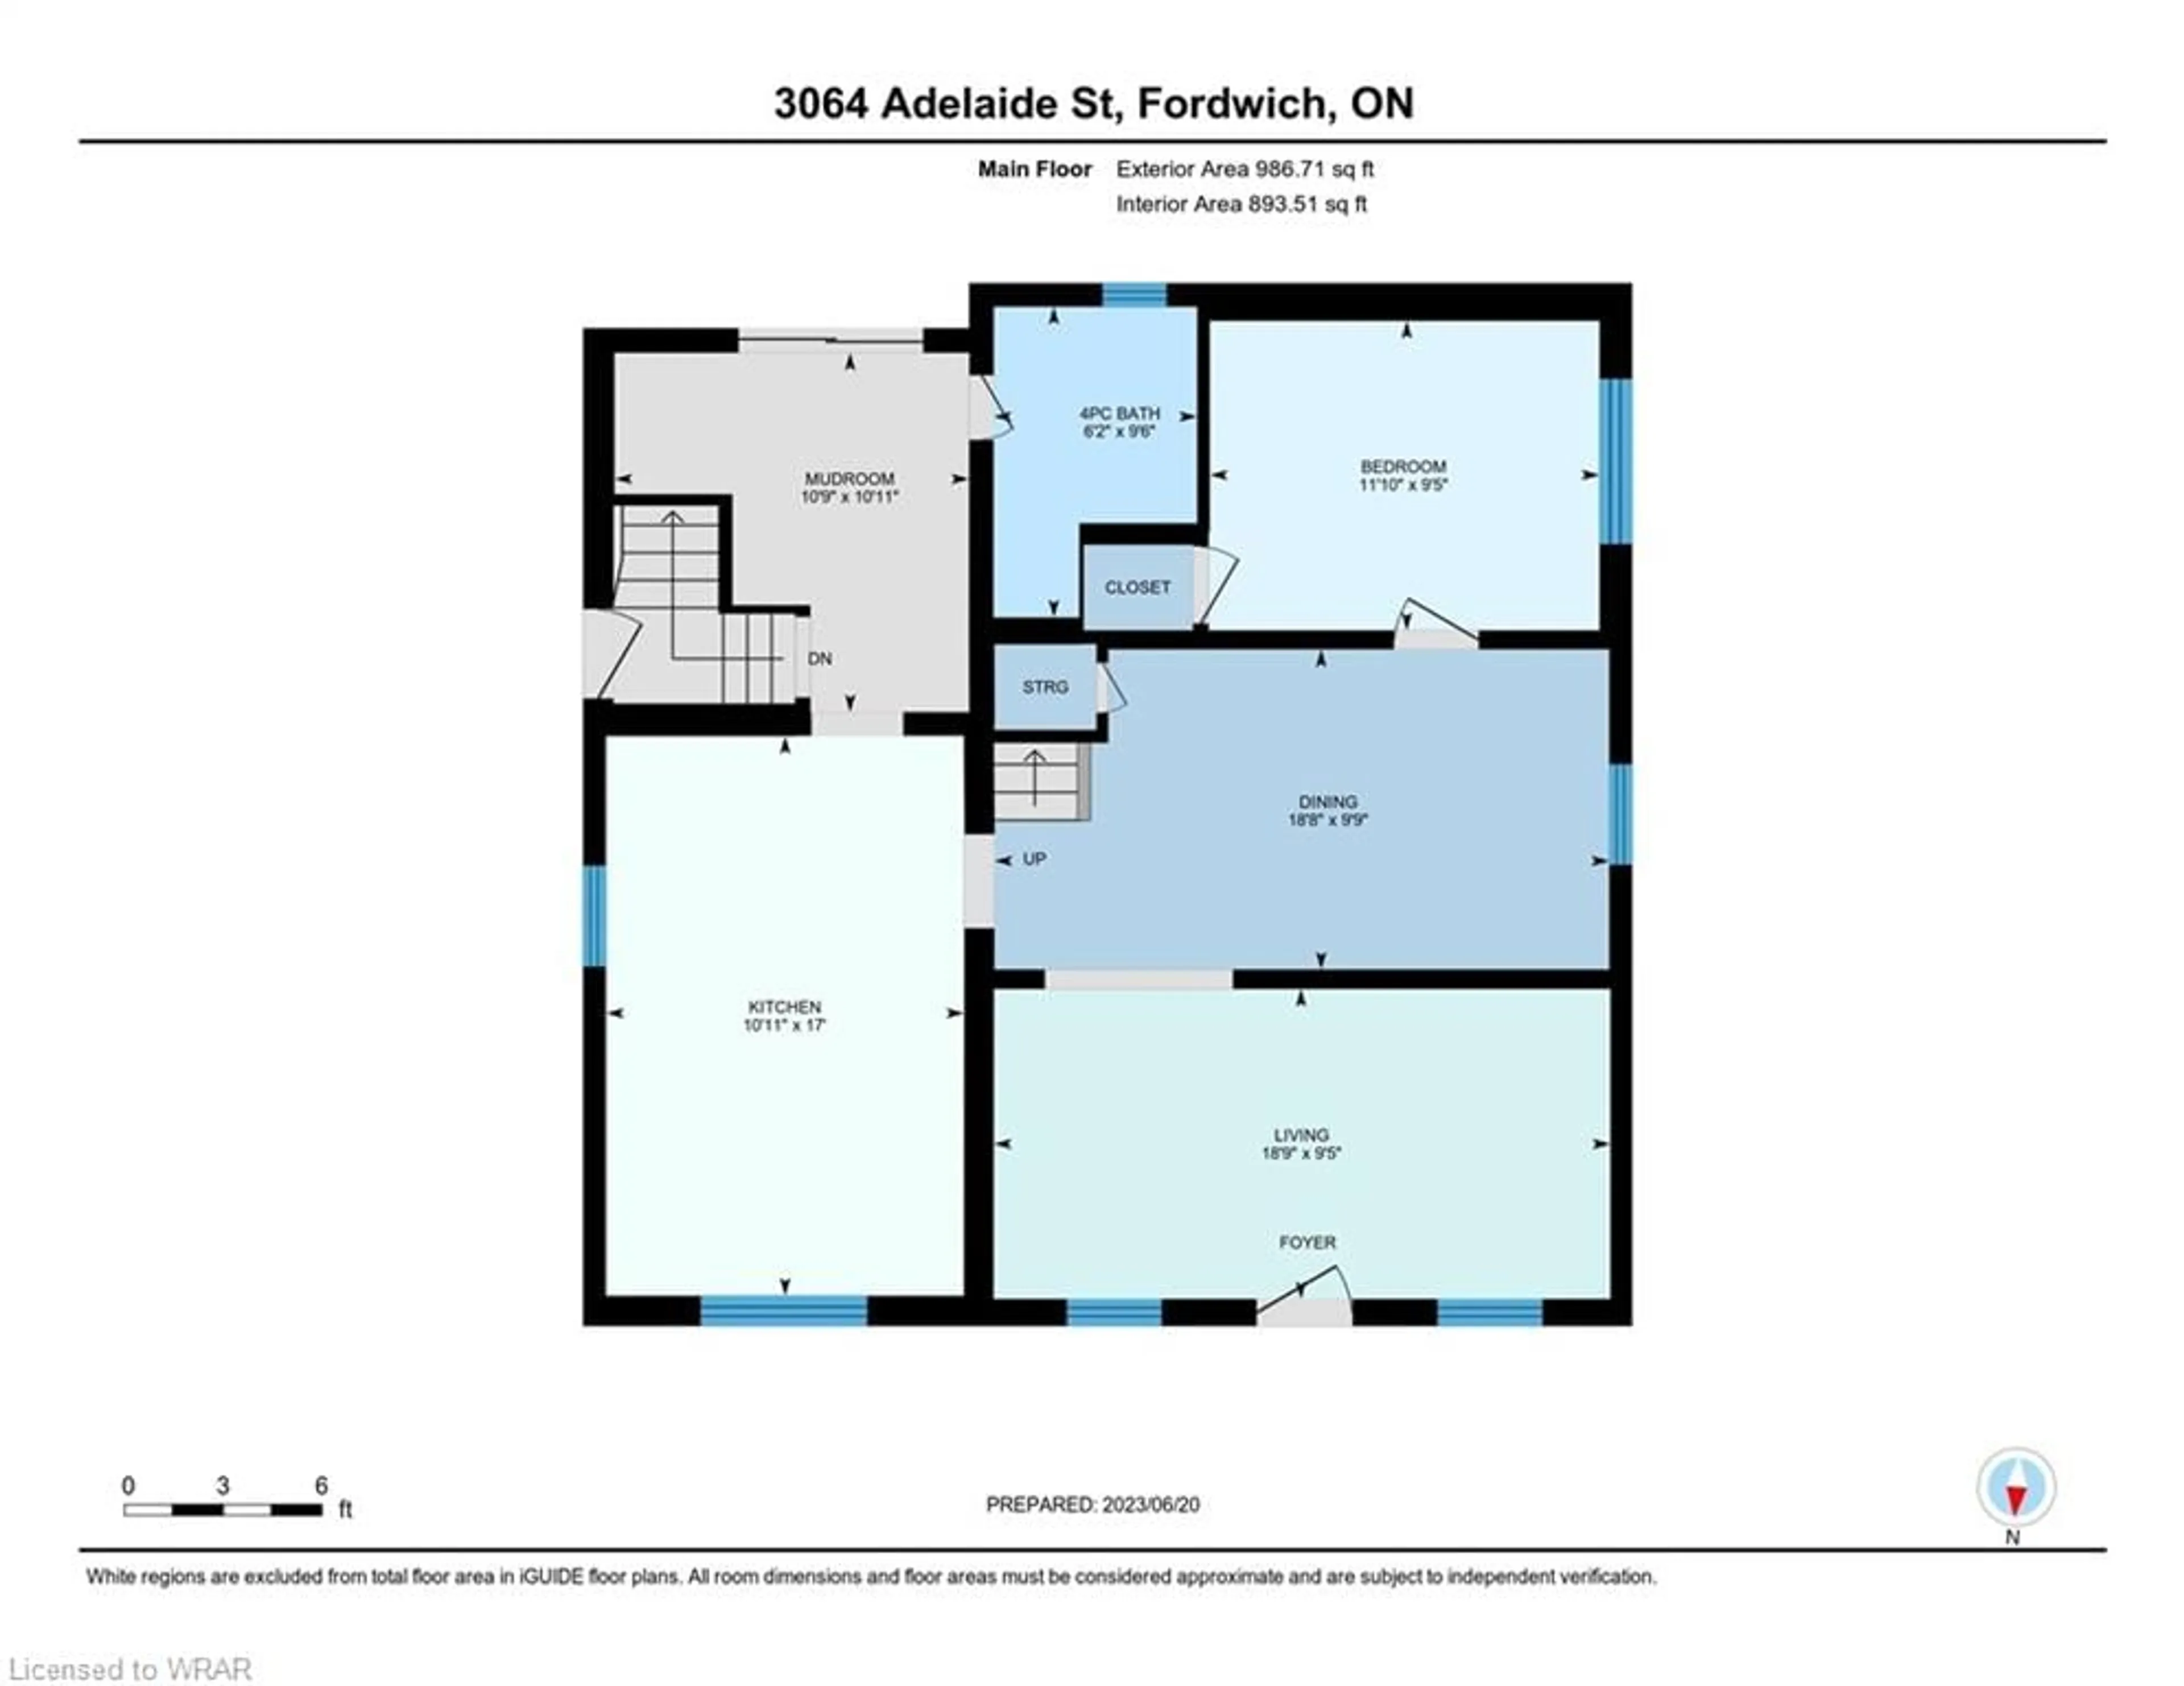 Floor plan for 3064 Adelaide St, Fordwich Ontario N0G 1V0